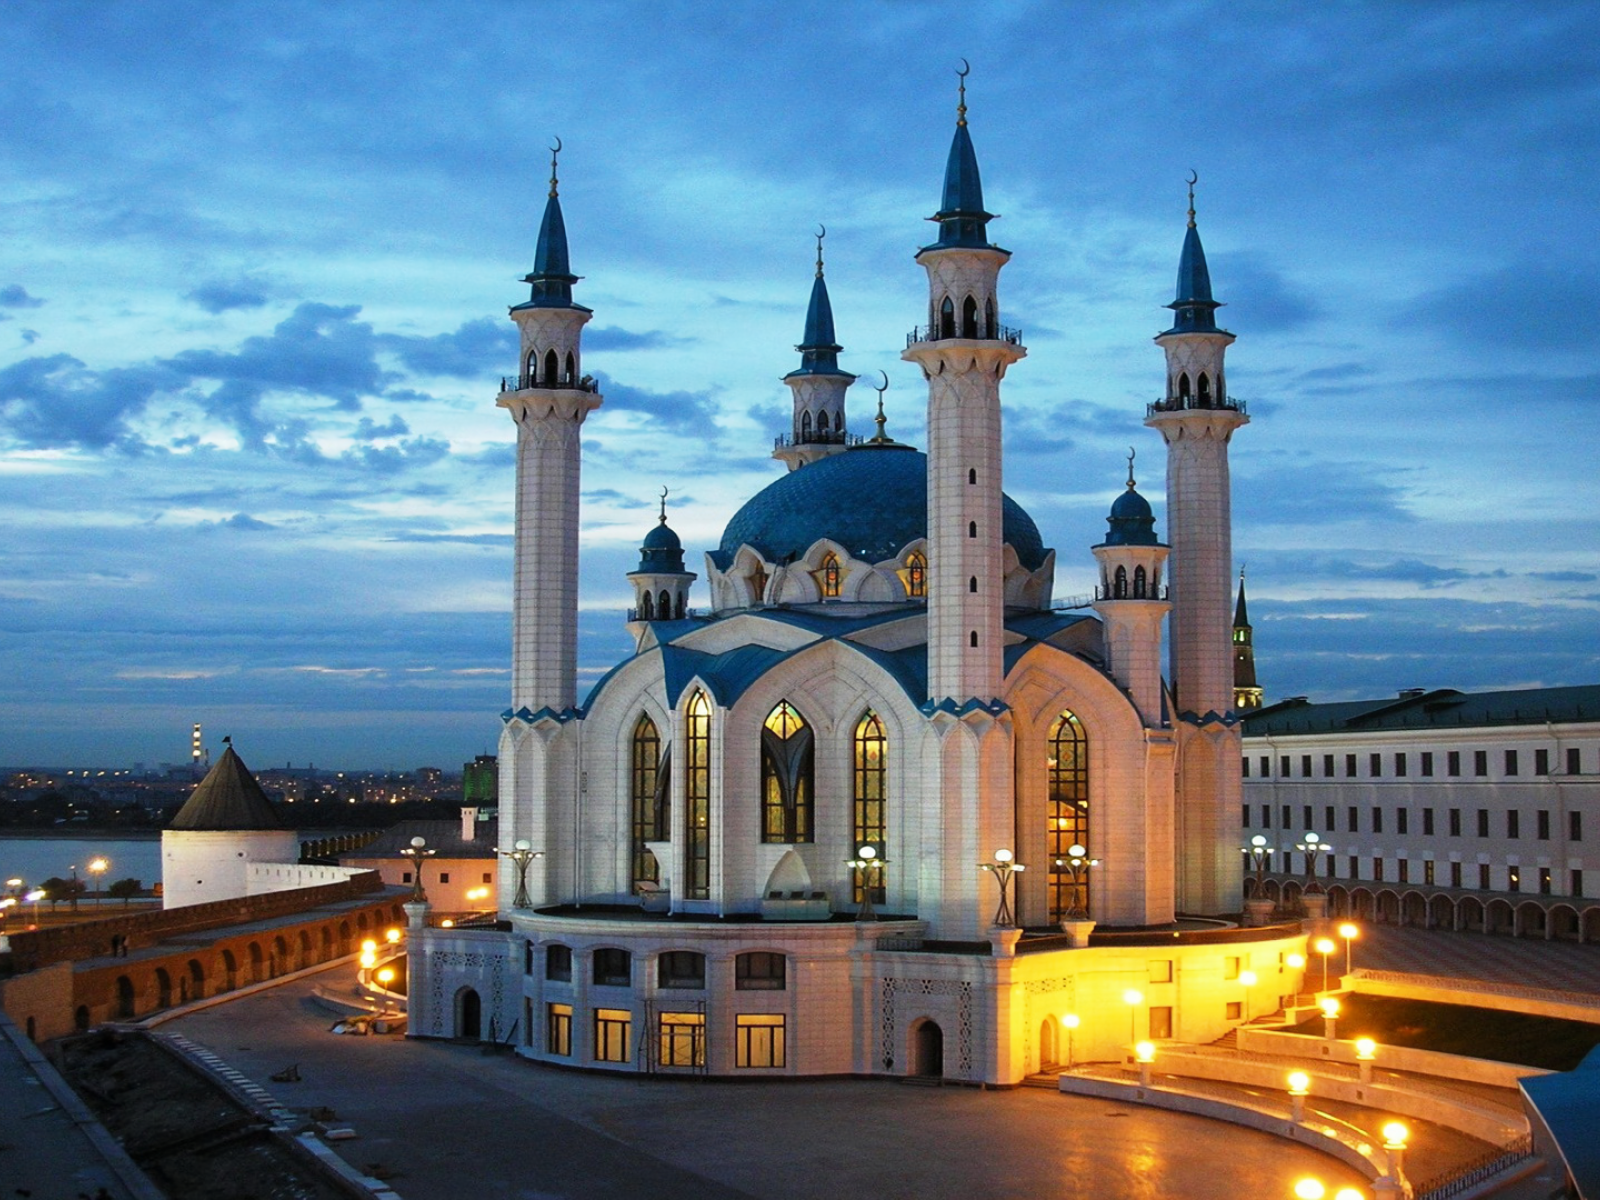 Мечеть Кул-Шариф, Казань, Россия 